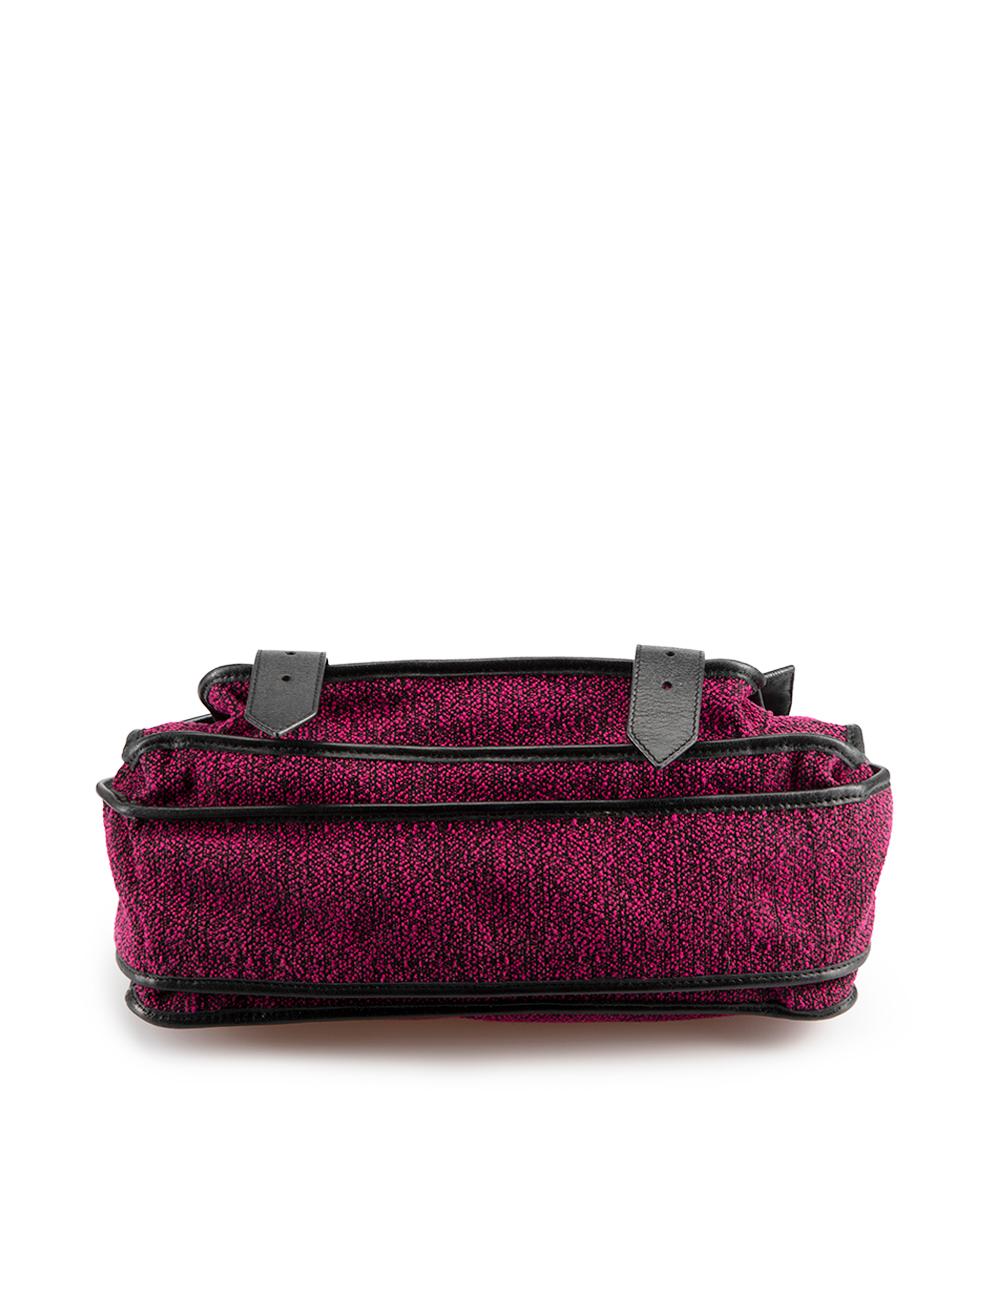 Proenza Schouler Women's Pink Tweed & Calfskin Leather Satchel Bag For Sale 1